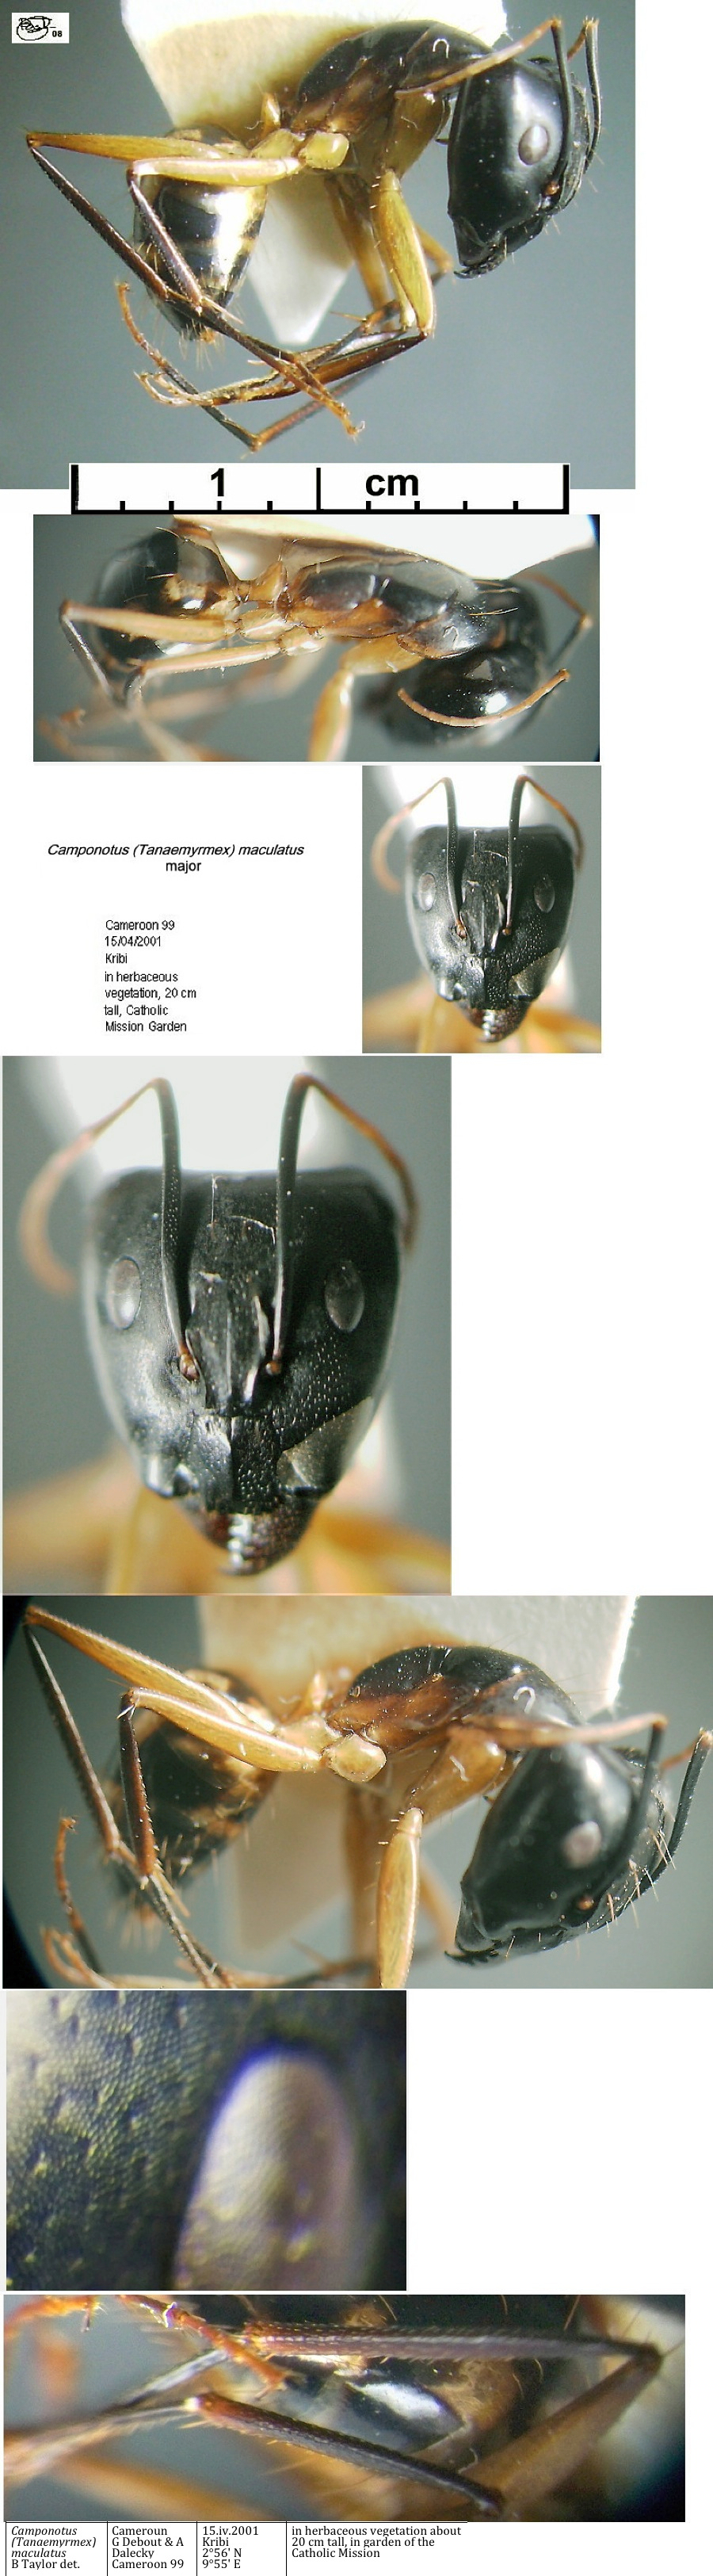 {Camponotus maculatus major Cameroun 99}